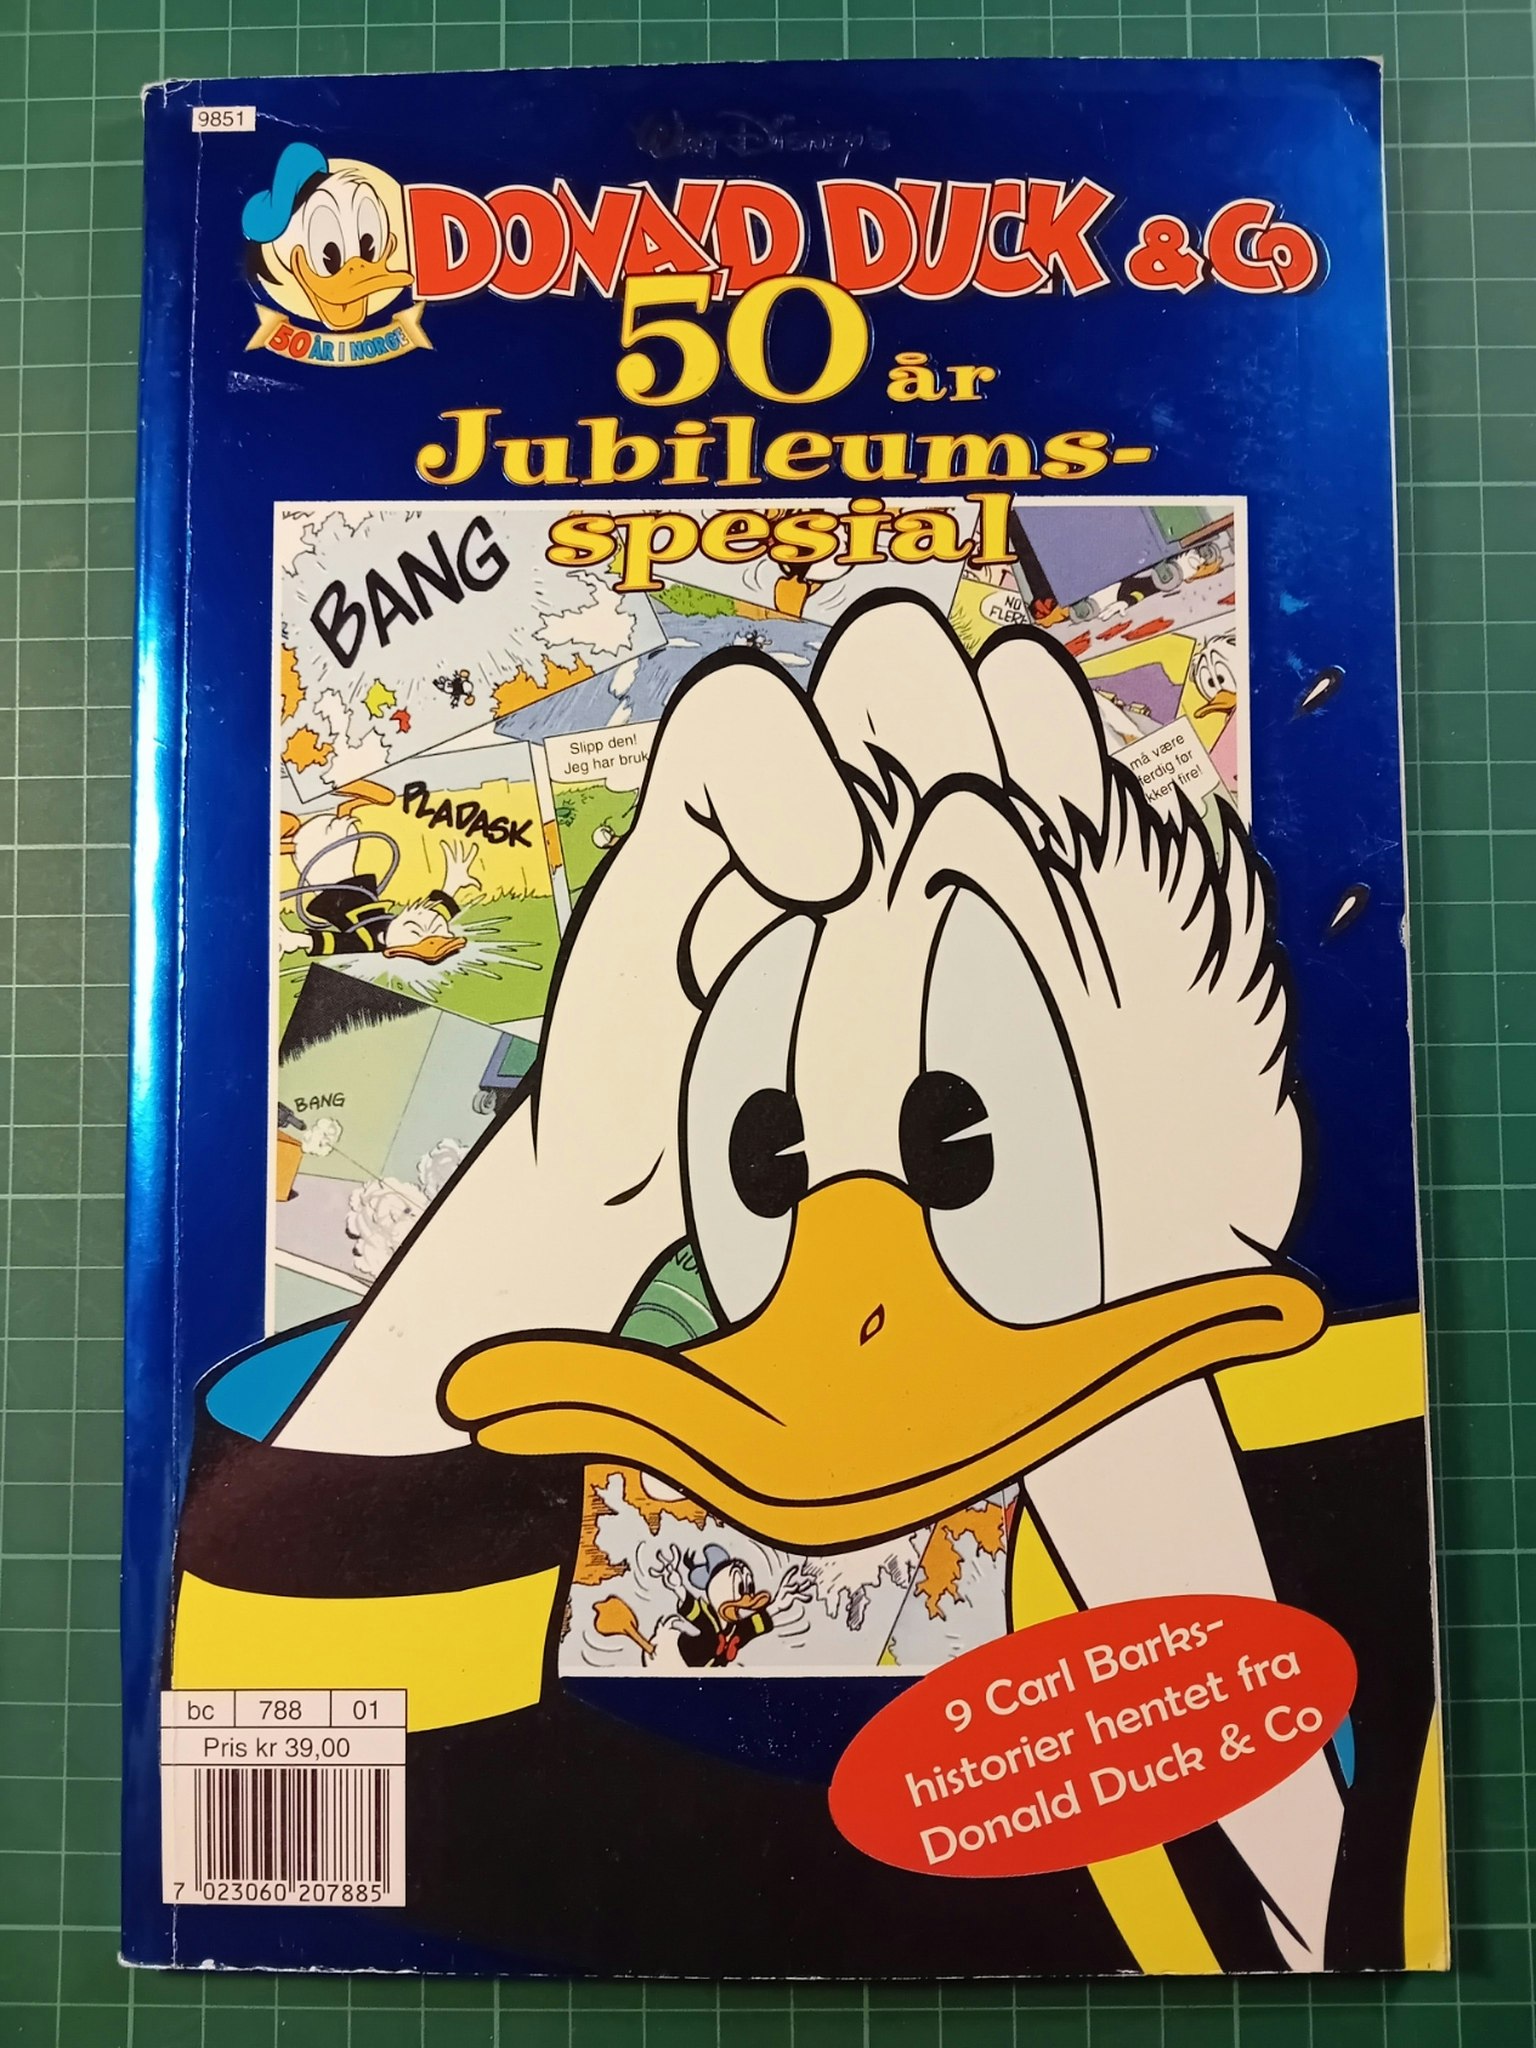 Donald Duck & Co 50 år jubileumspesial